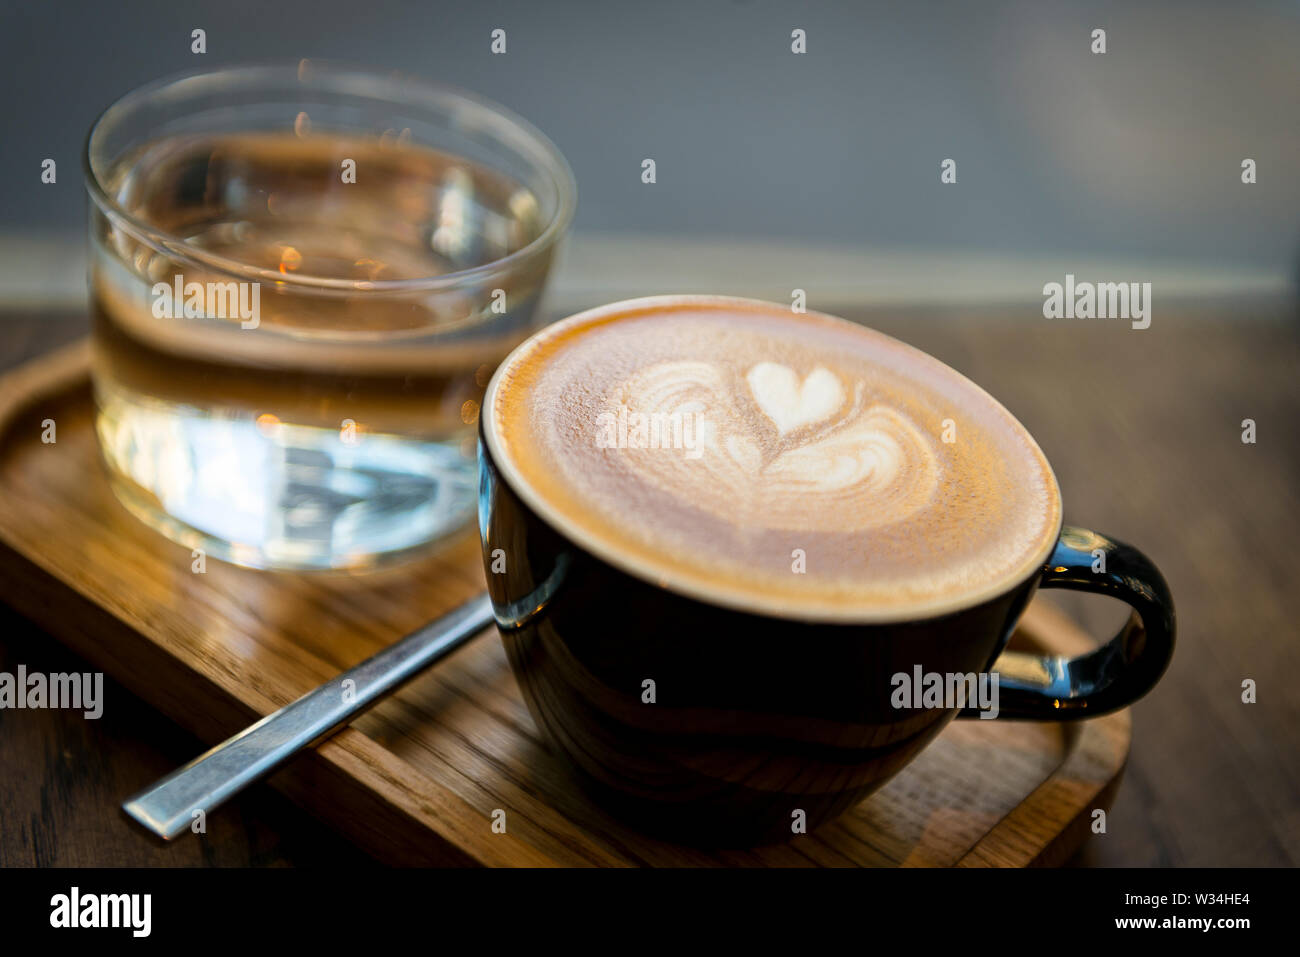 Taza de café bien presentada, completa con amor en el corazón de espuma de leche y el vaso de agua en una cafetería de la ciudad de Londres Foto de stock